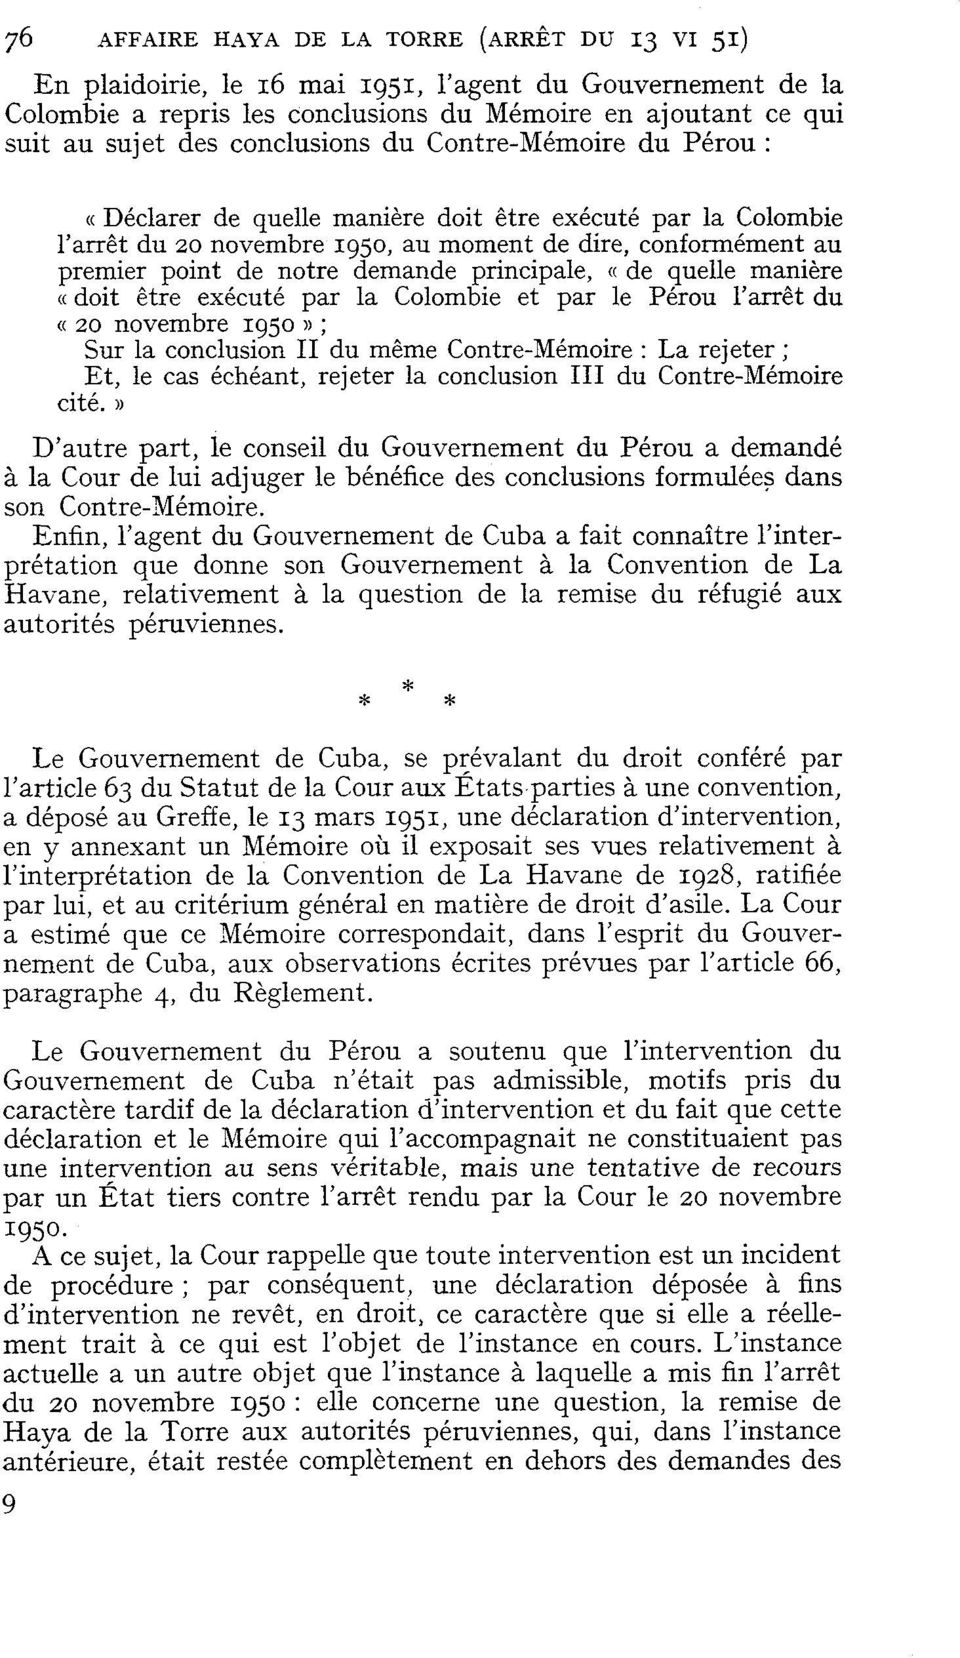 principale, (( de quelle manière «doit être exécuté par la Colombie et par le Pérou l'arrêt du «20 novembre 1950 )) ; Sur la conclusion II du même Contre-Mémoire : La rejeter ; Et, le cas échéant,